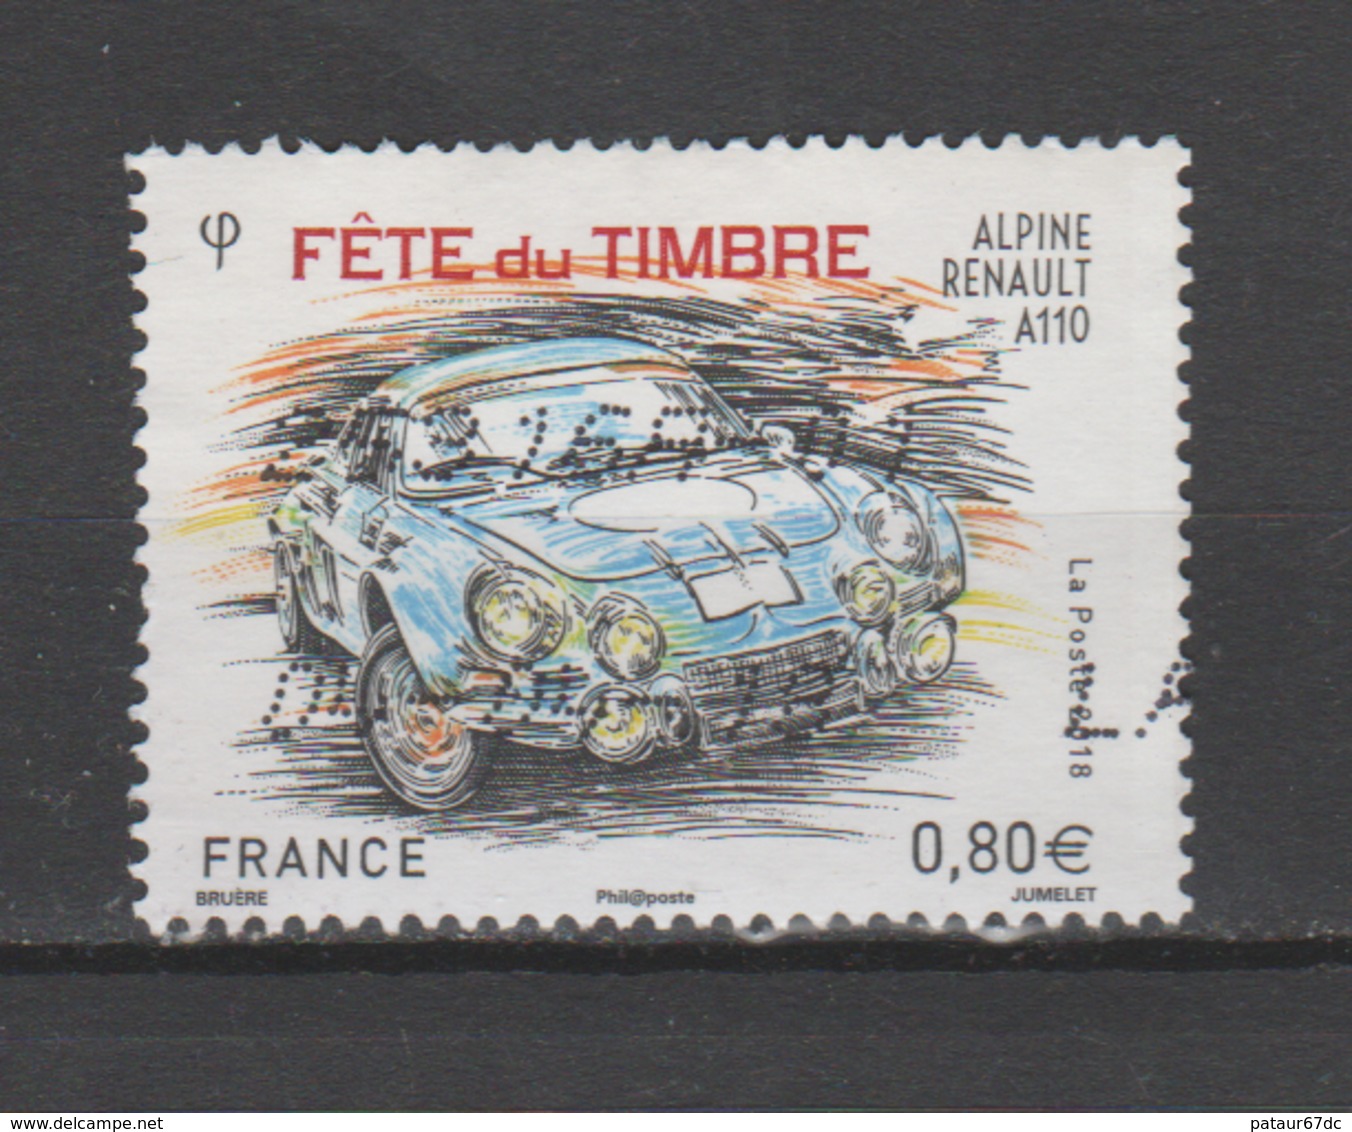 FRANCE / 2018 / Y&T N° 5204 : "Fête Du Timbre" (Alpine Renault A 110) - Usuel - Oblitérés